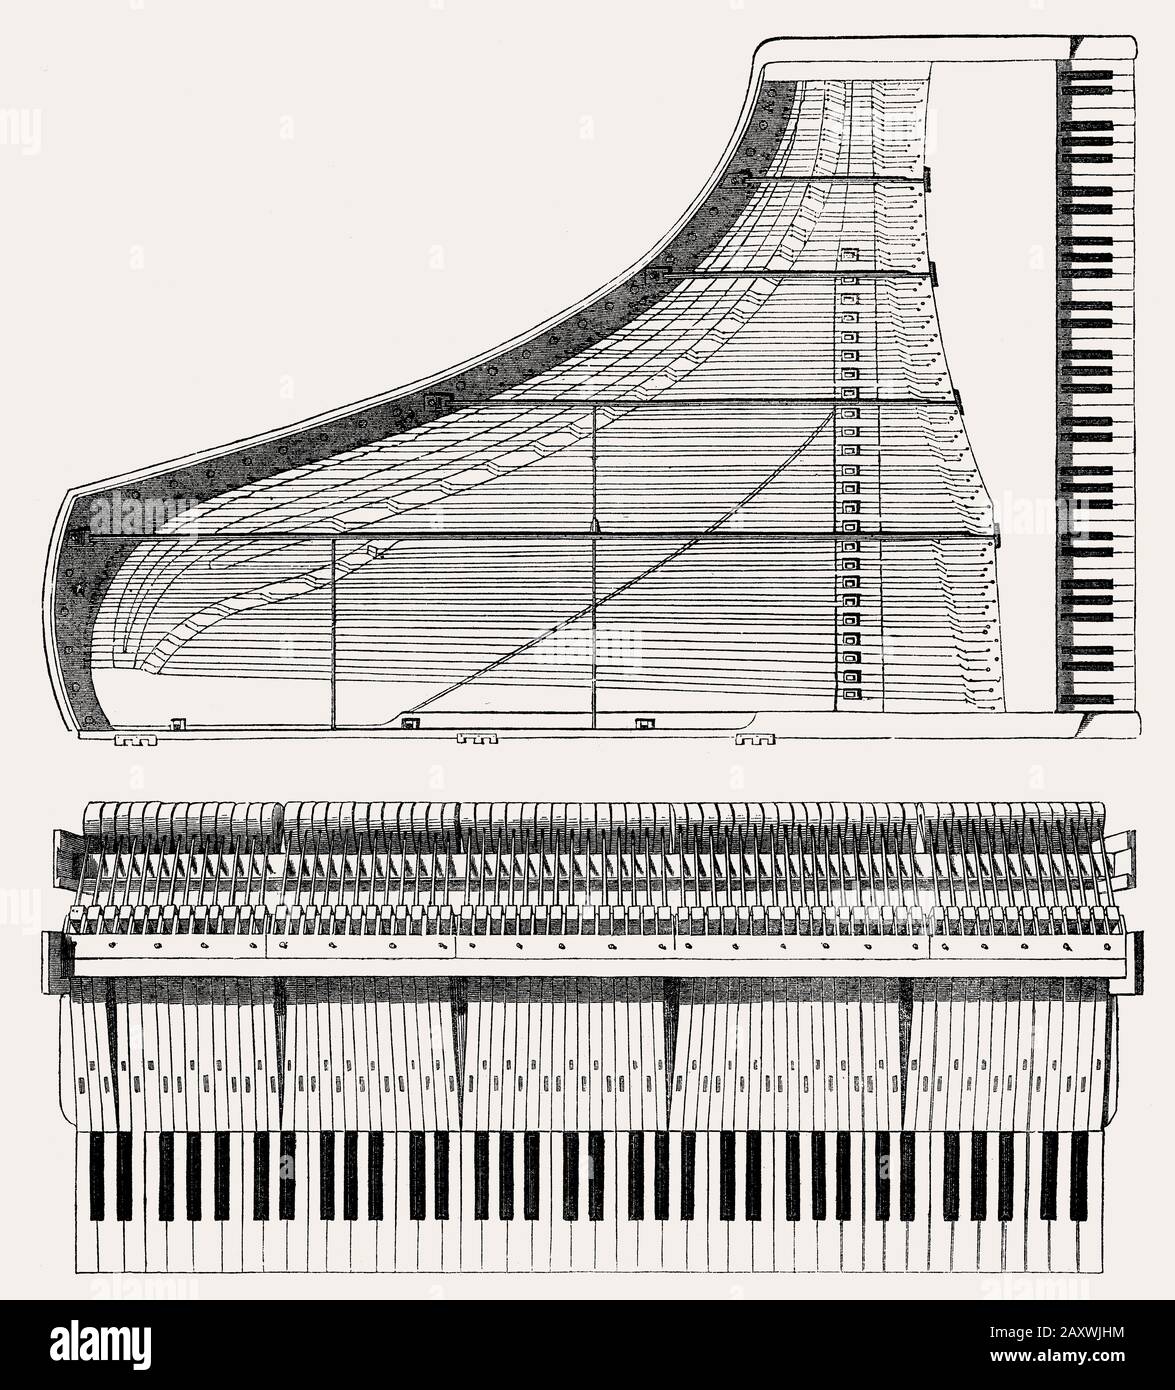 Technischer Bau für ein Klavier, 19. Jahrhundert Stockfotografie - Alamy